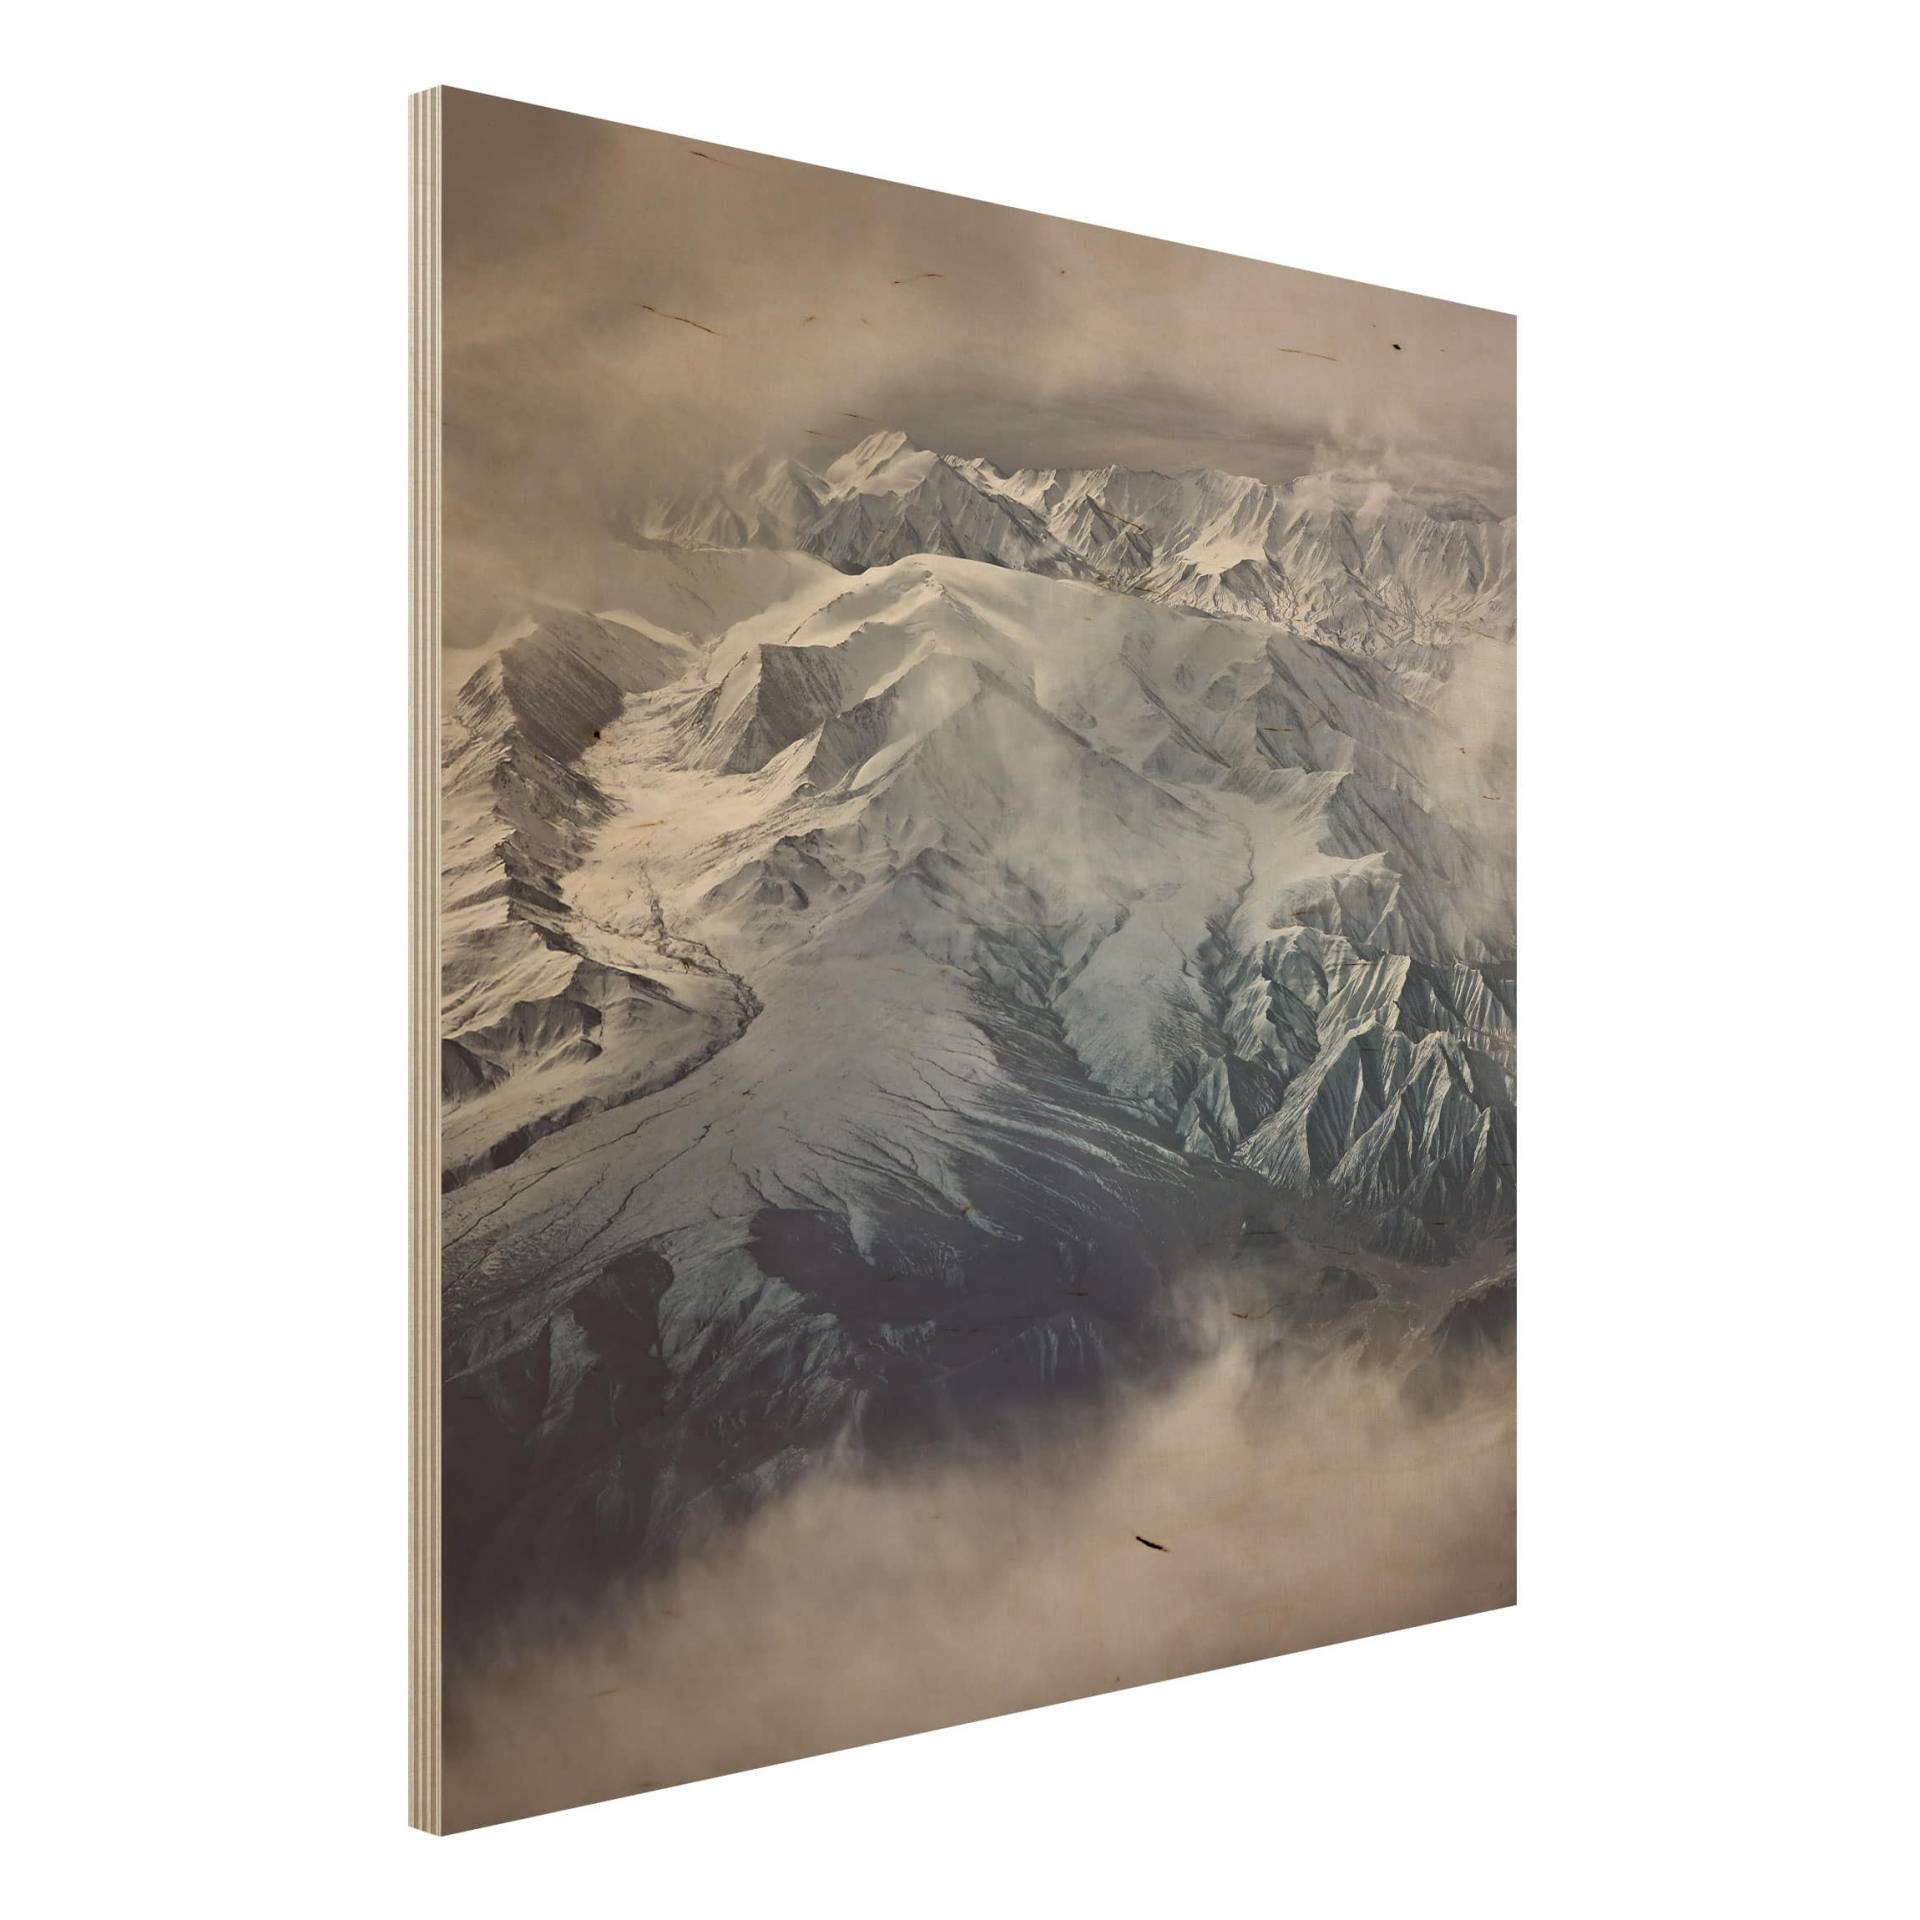 Holzbild Natur & Landschaft Berge von Tibet von Klebefieber